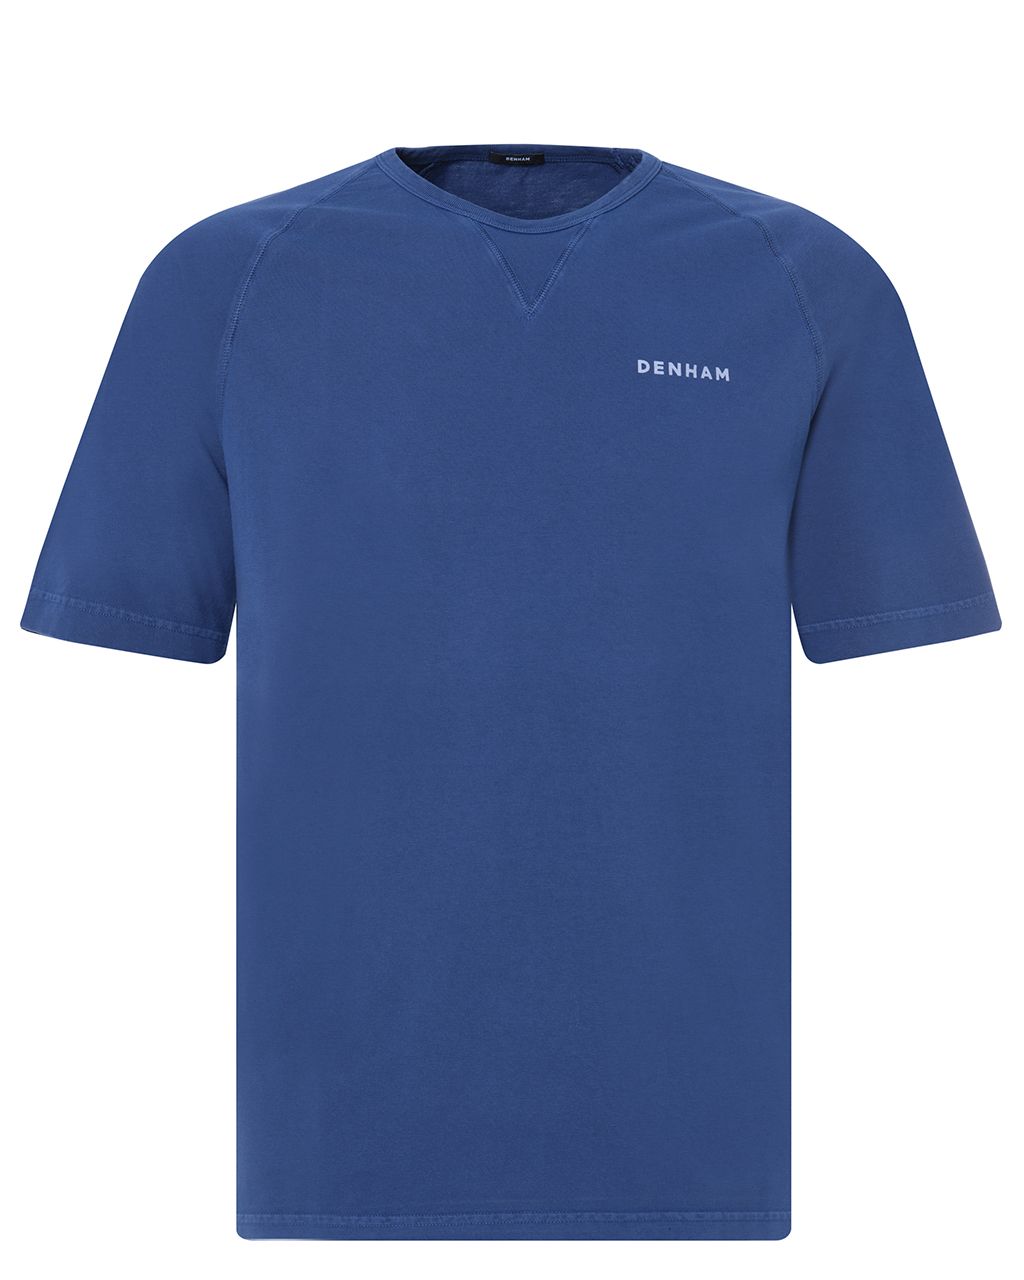 DENHAM Suki Roger T-shirt KM Blauw 075841-001-L